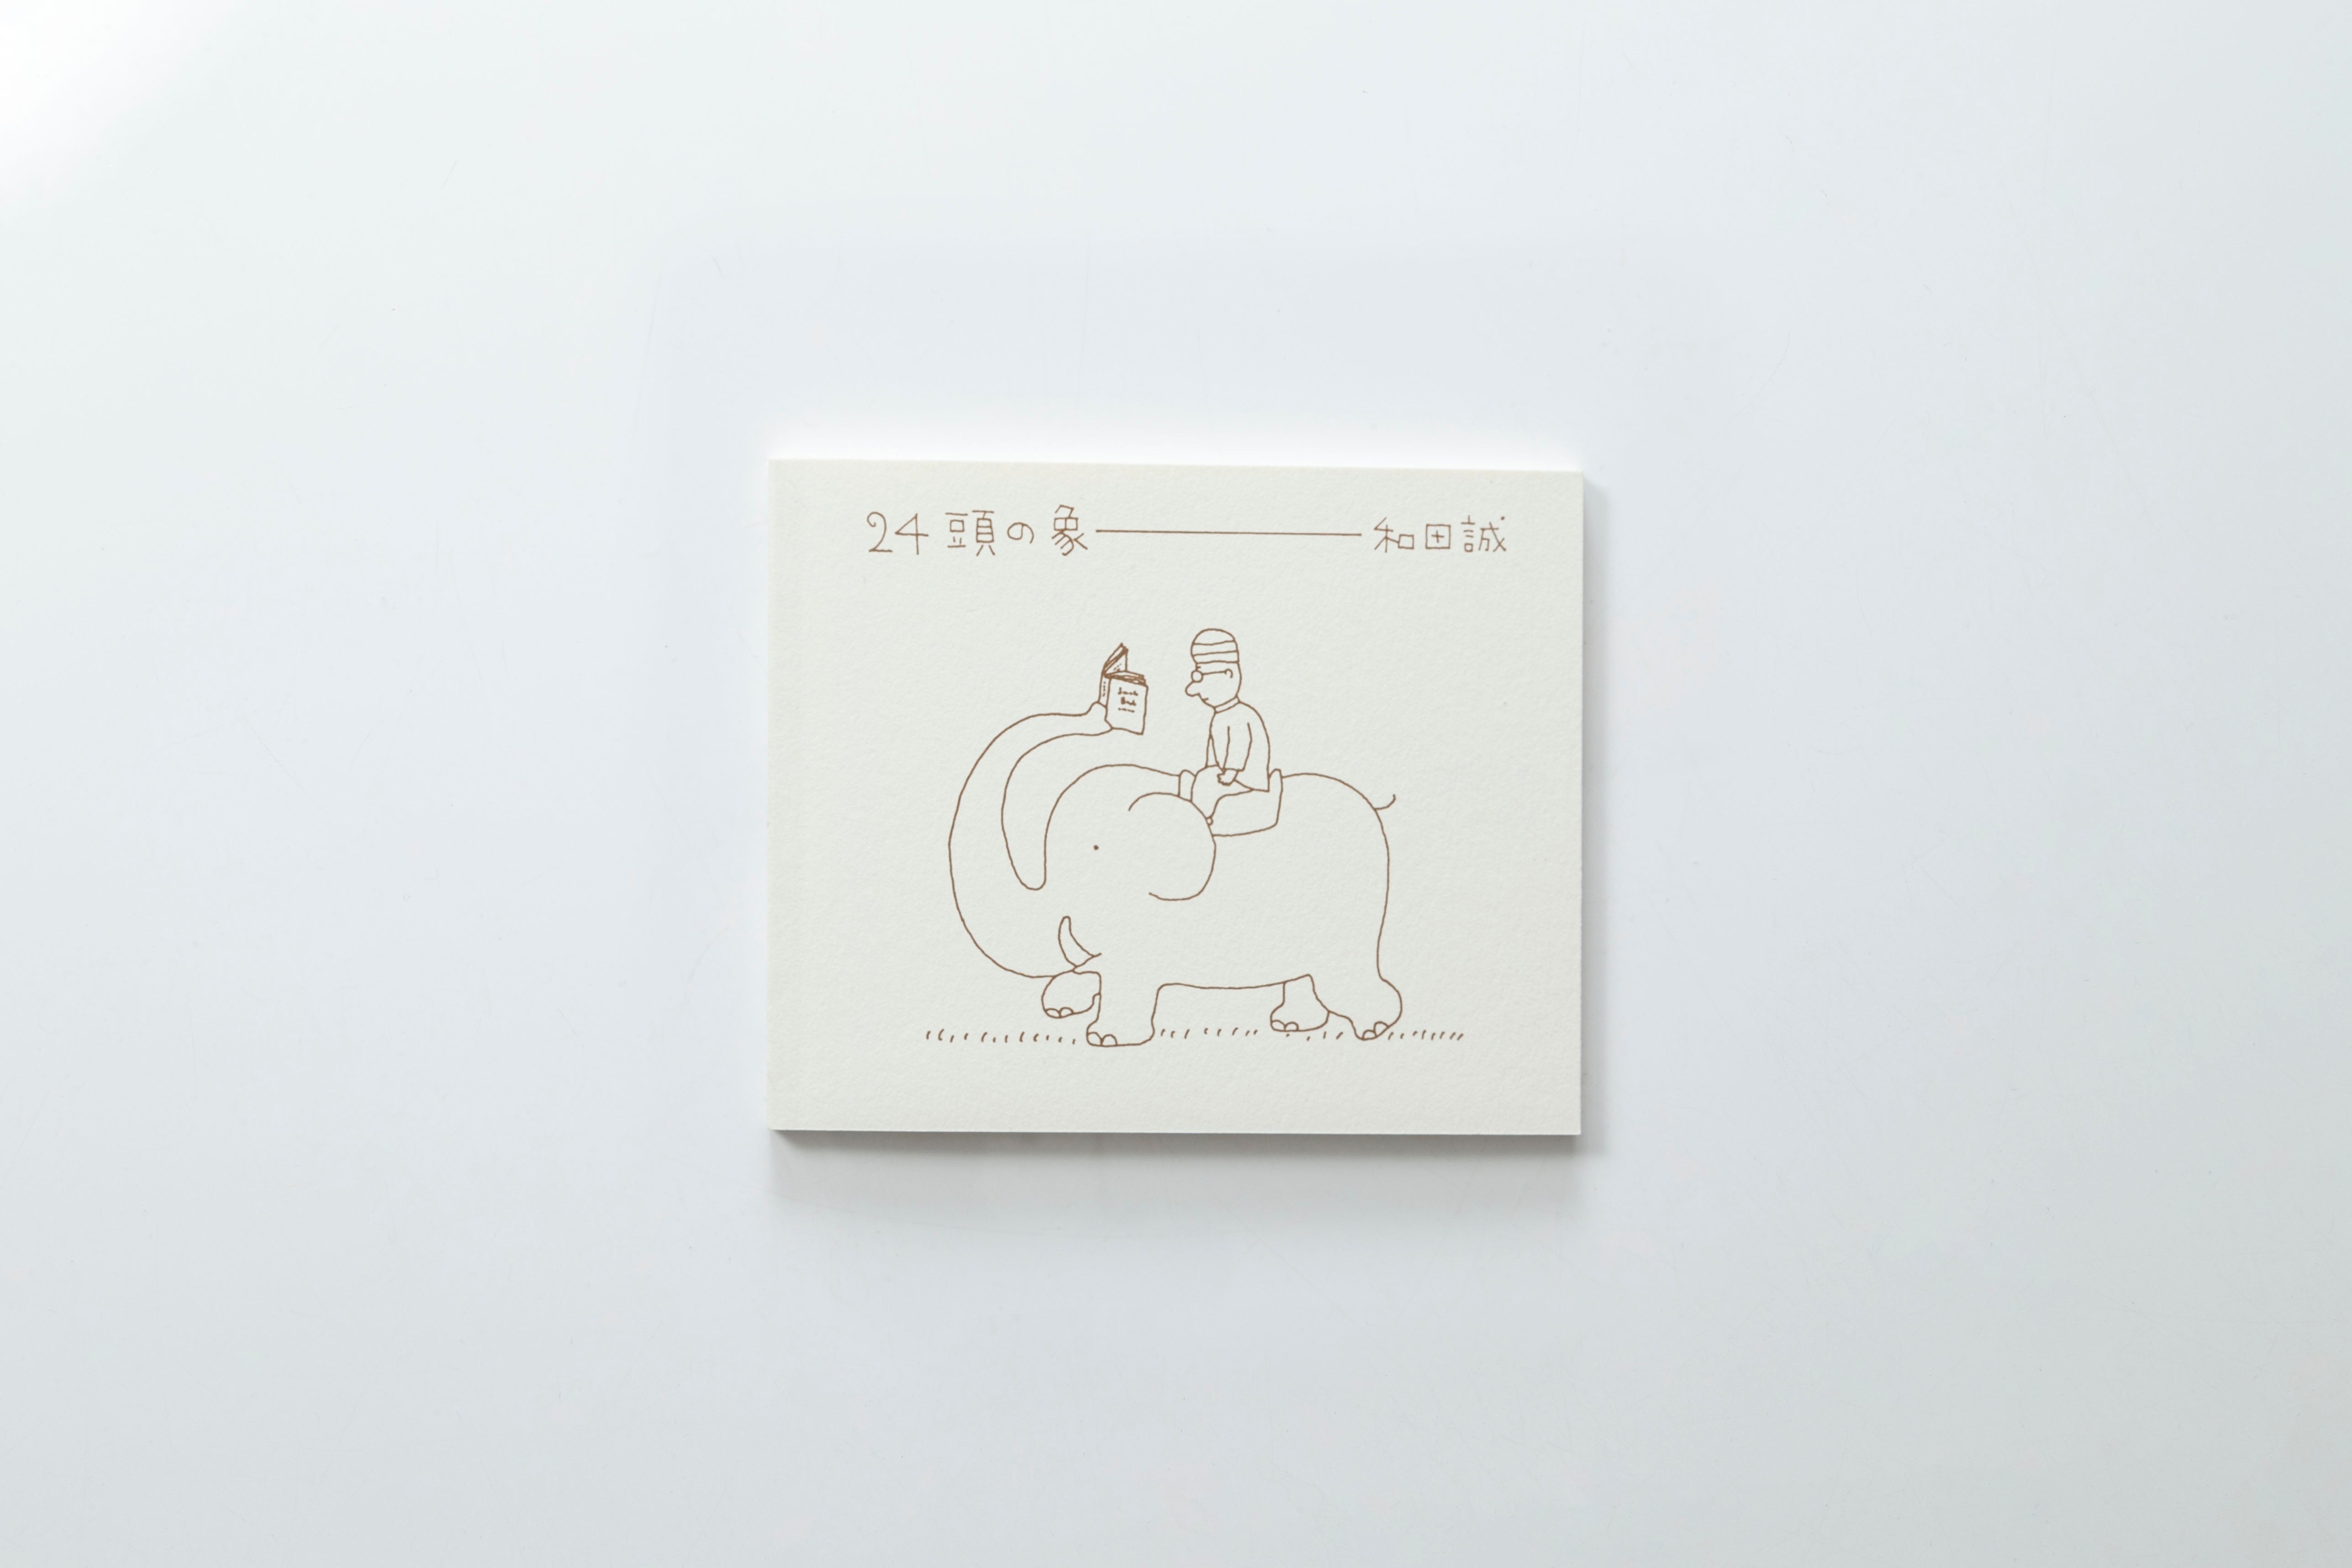 【トムズボックス|和田誠】24頭の象